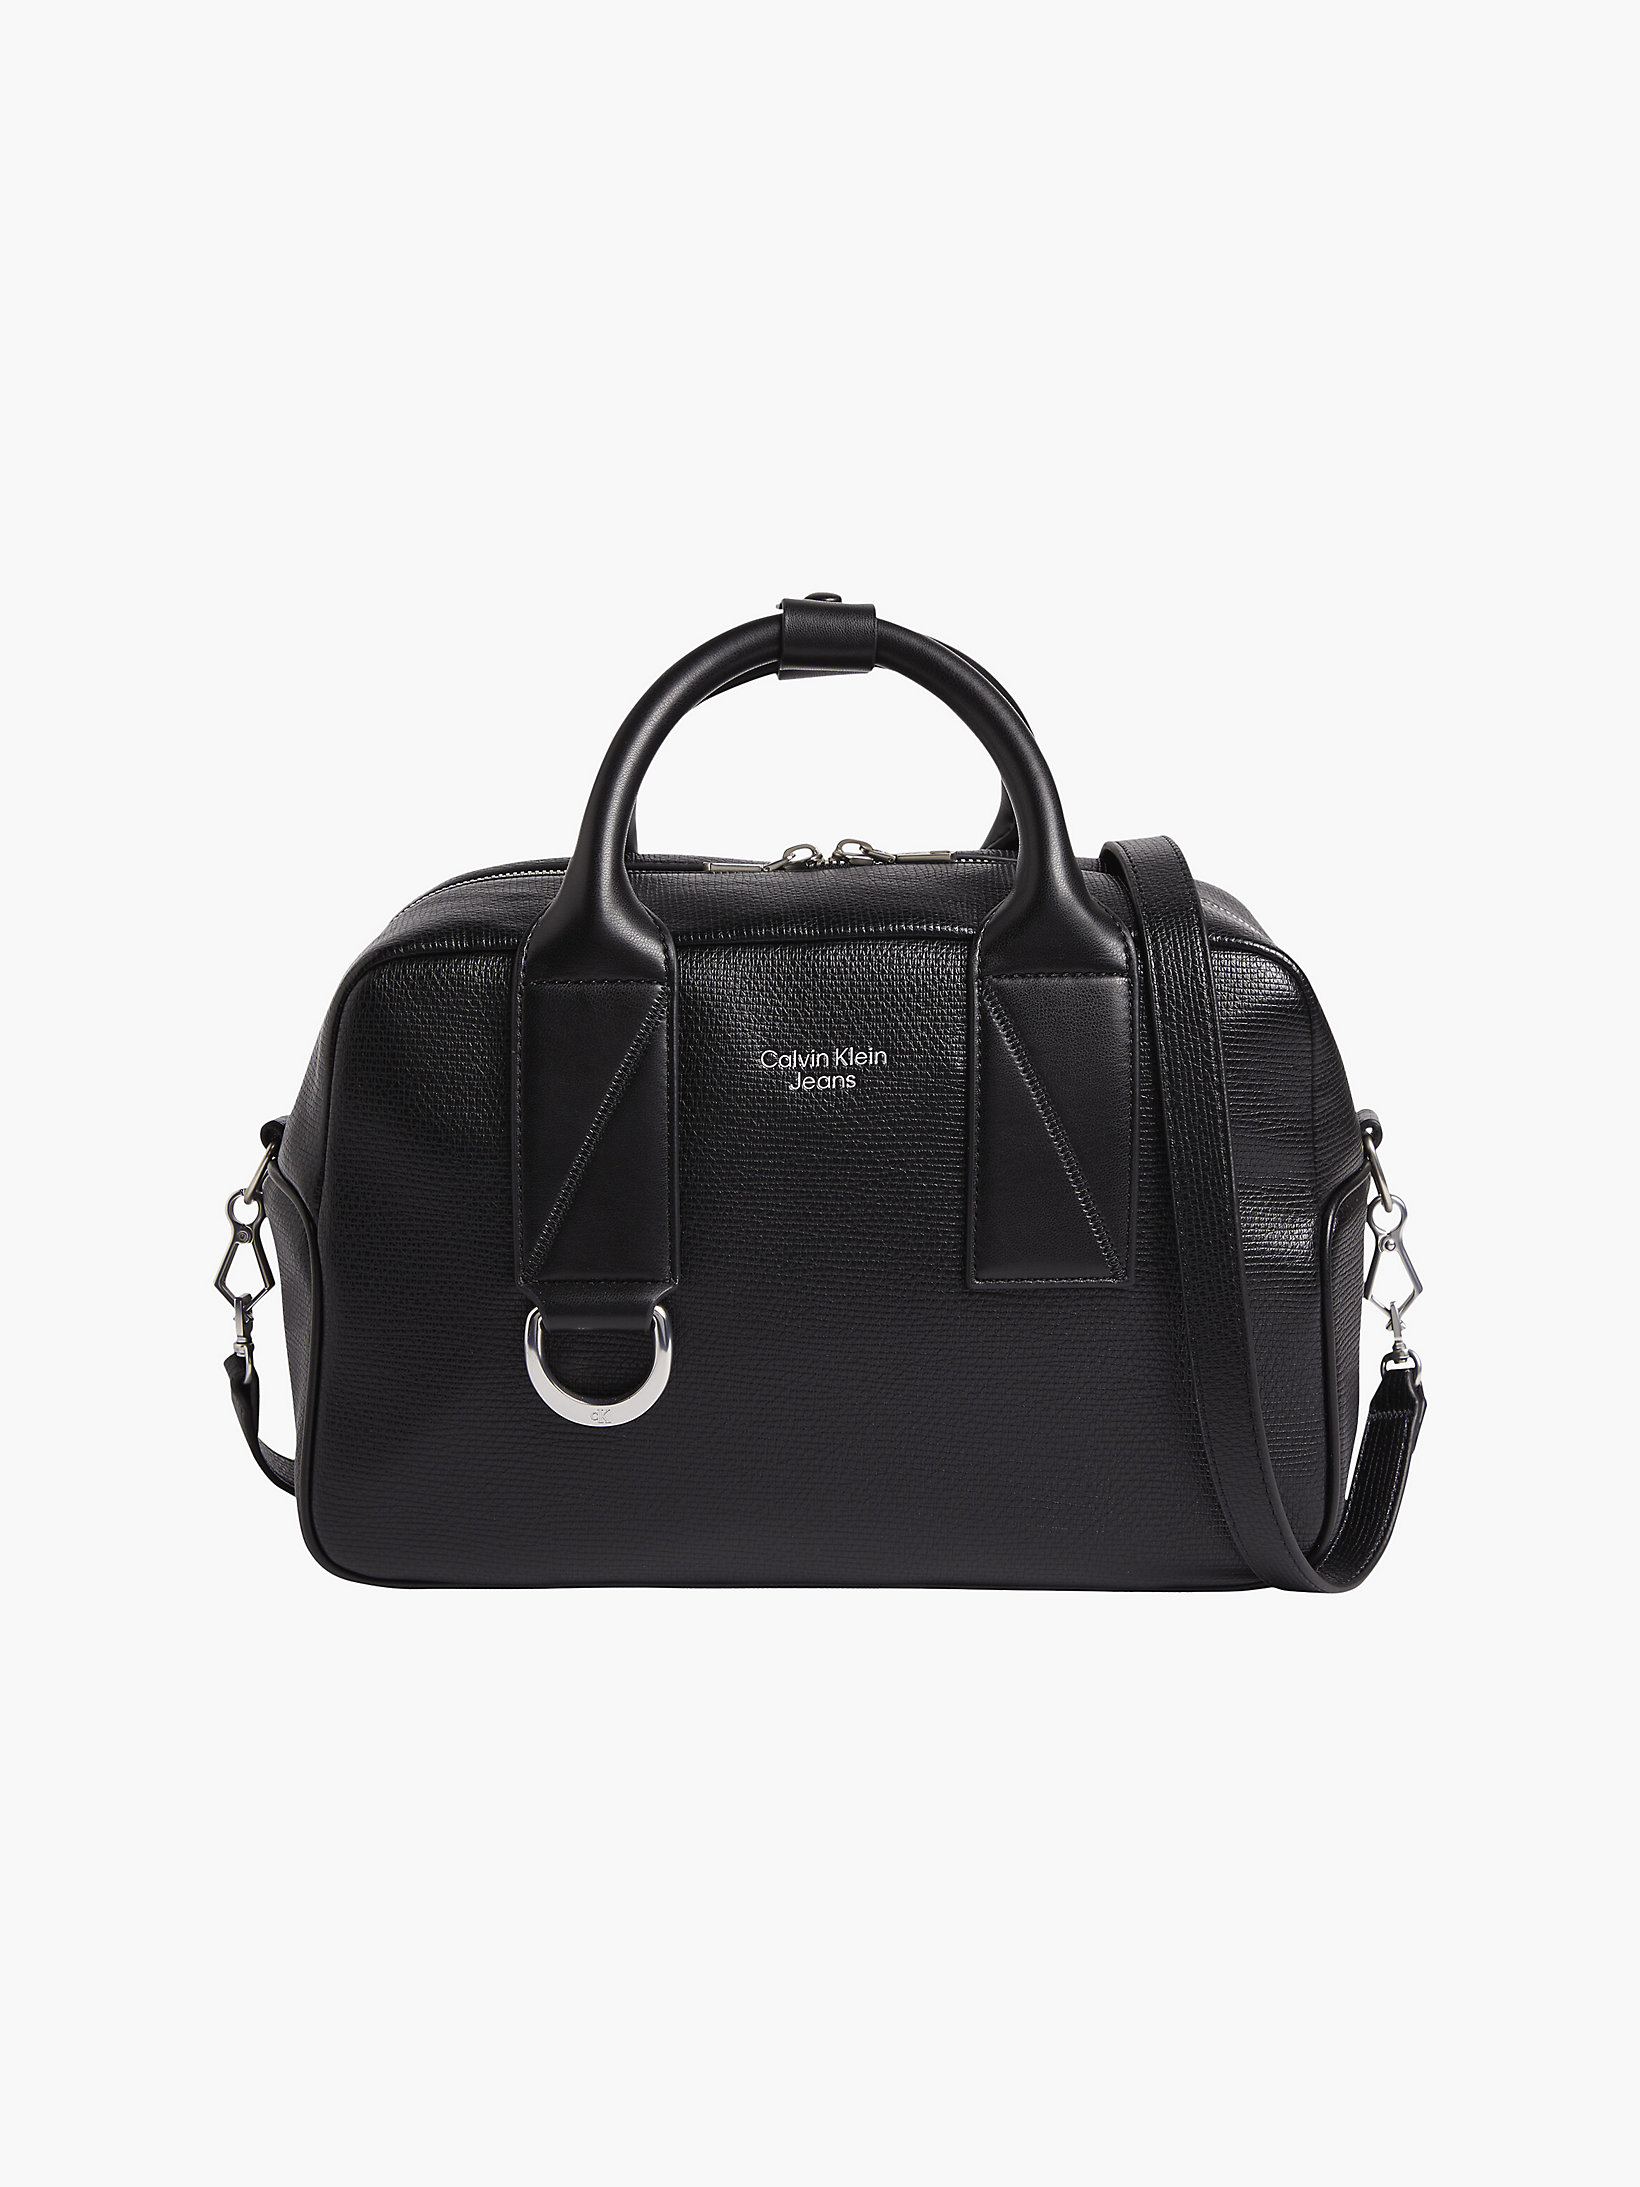 Black Textured Handbag undefined women Calvin Klein